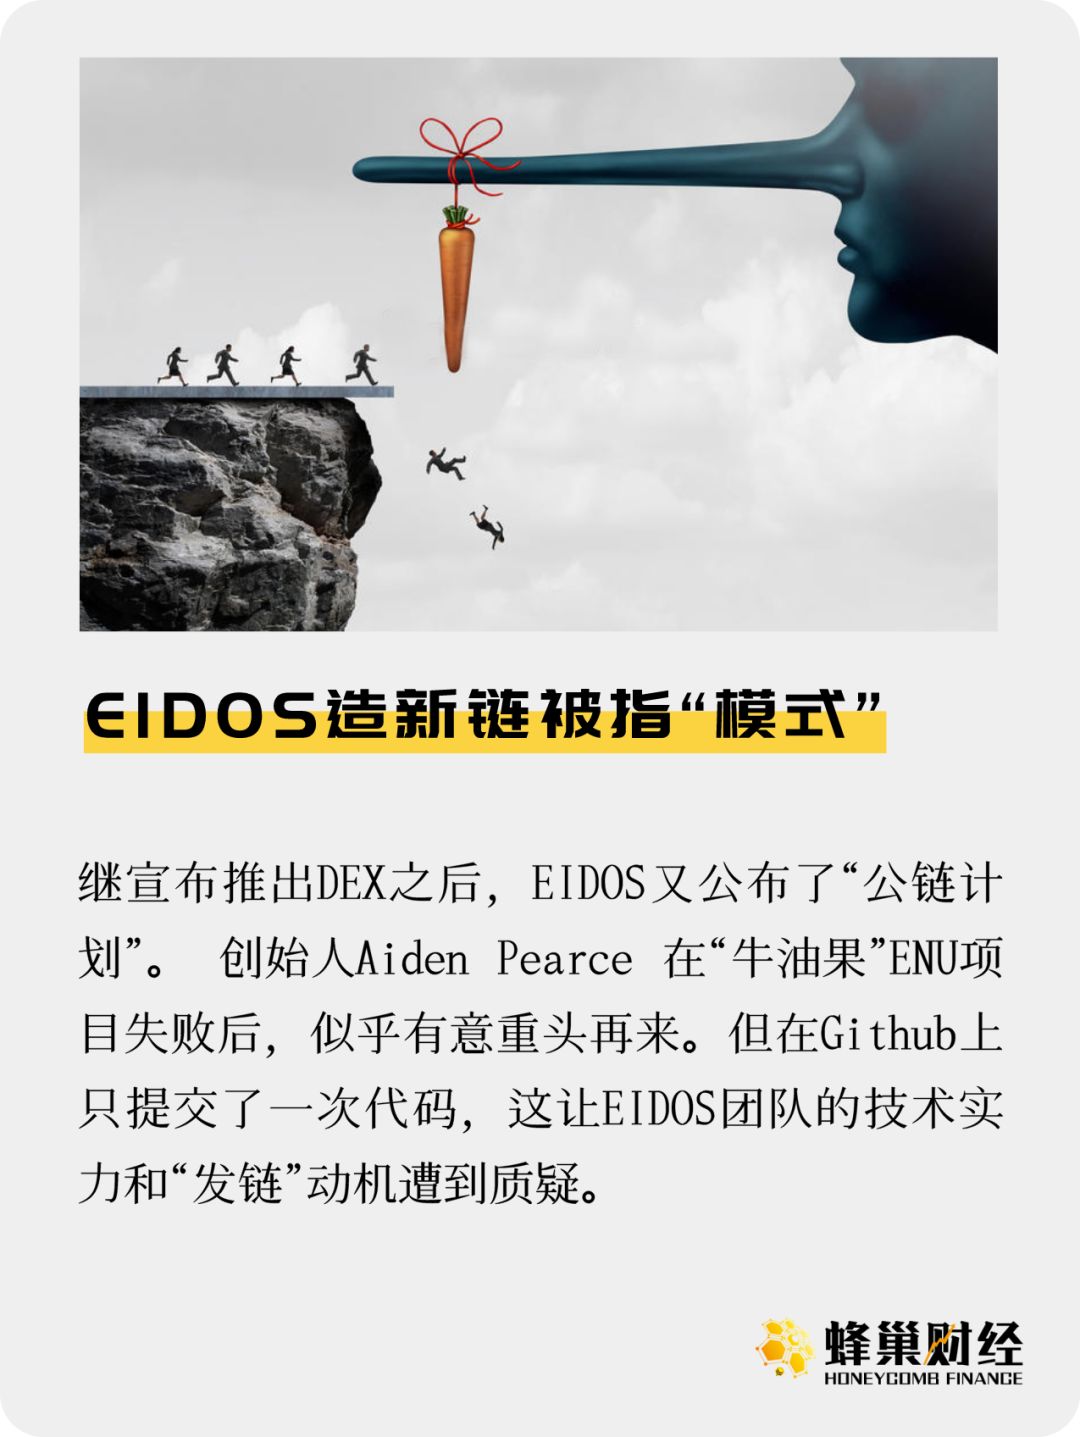 EIDOS发新链 将部署智能合约可随时退货YAS